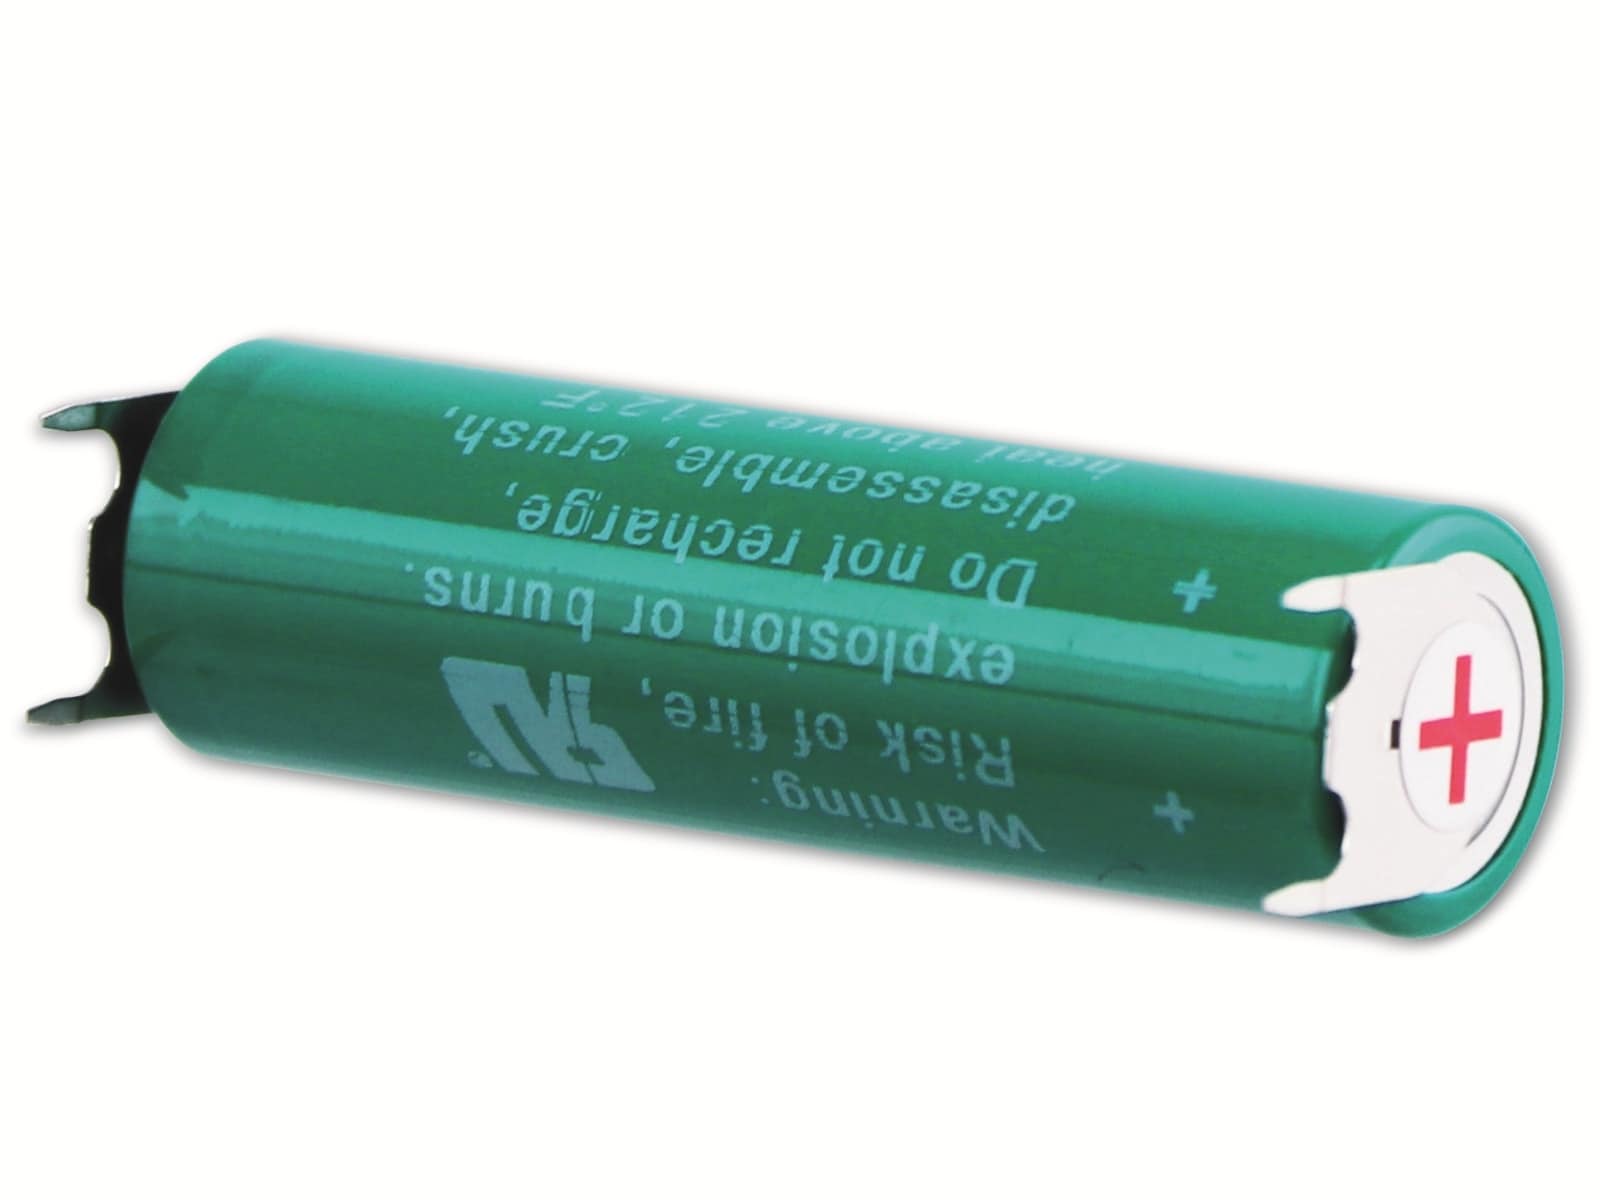 VARTA Batterie, 6117 CR, AA